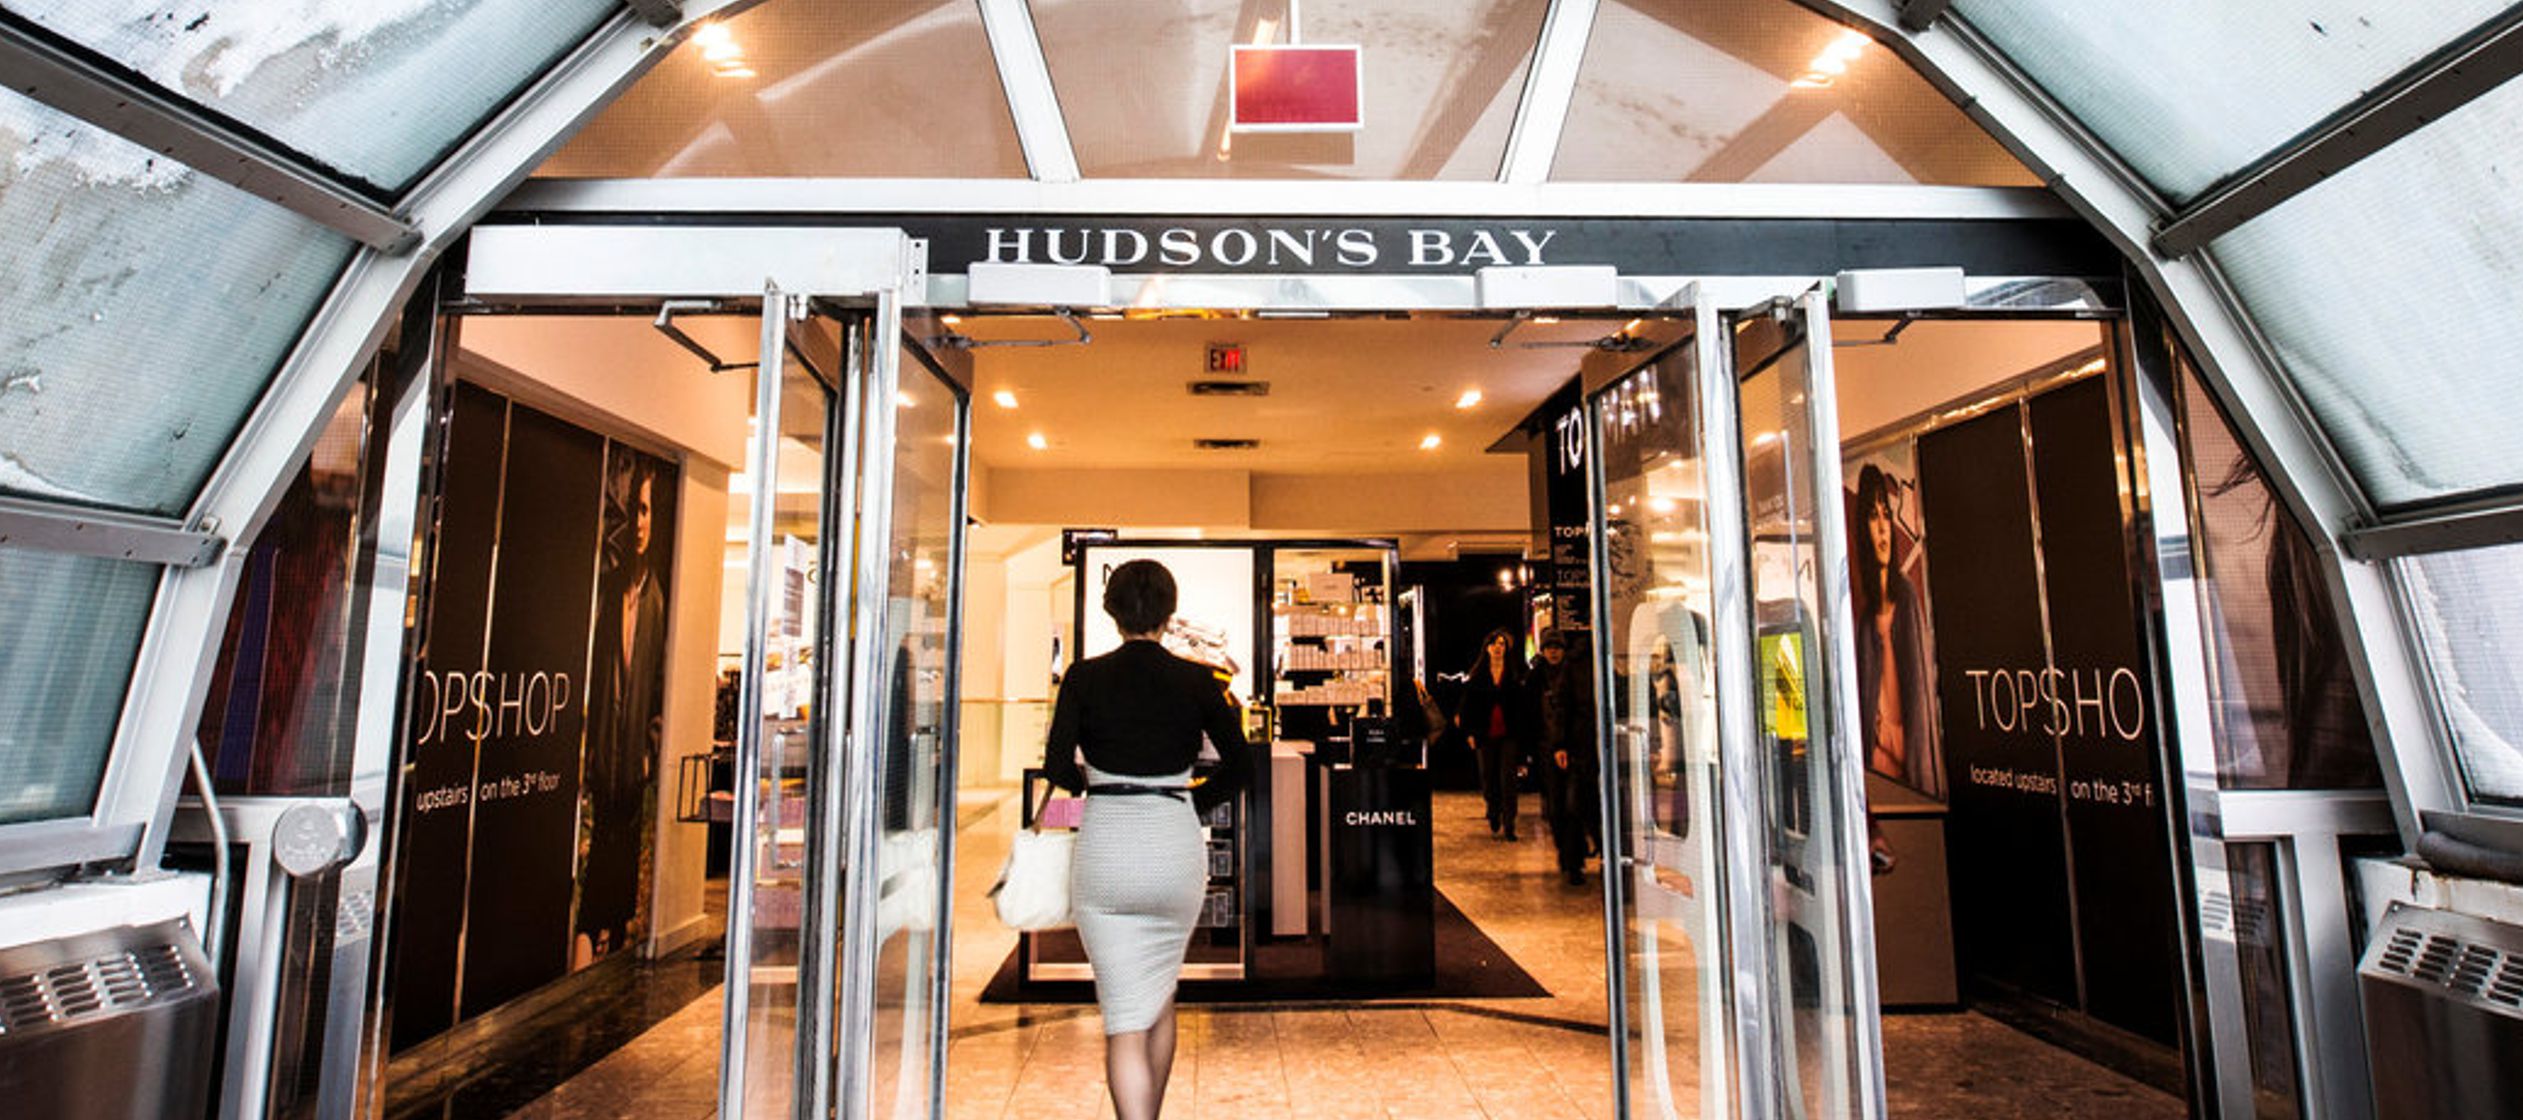 Hudson's Bay también ha estado en la mira de varias campañas, incluyendo Grab...